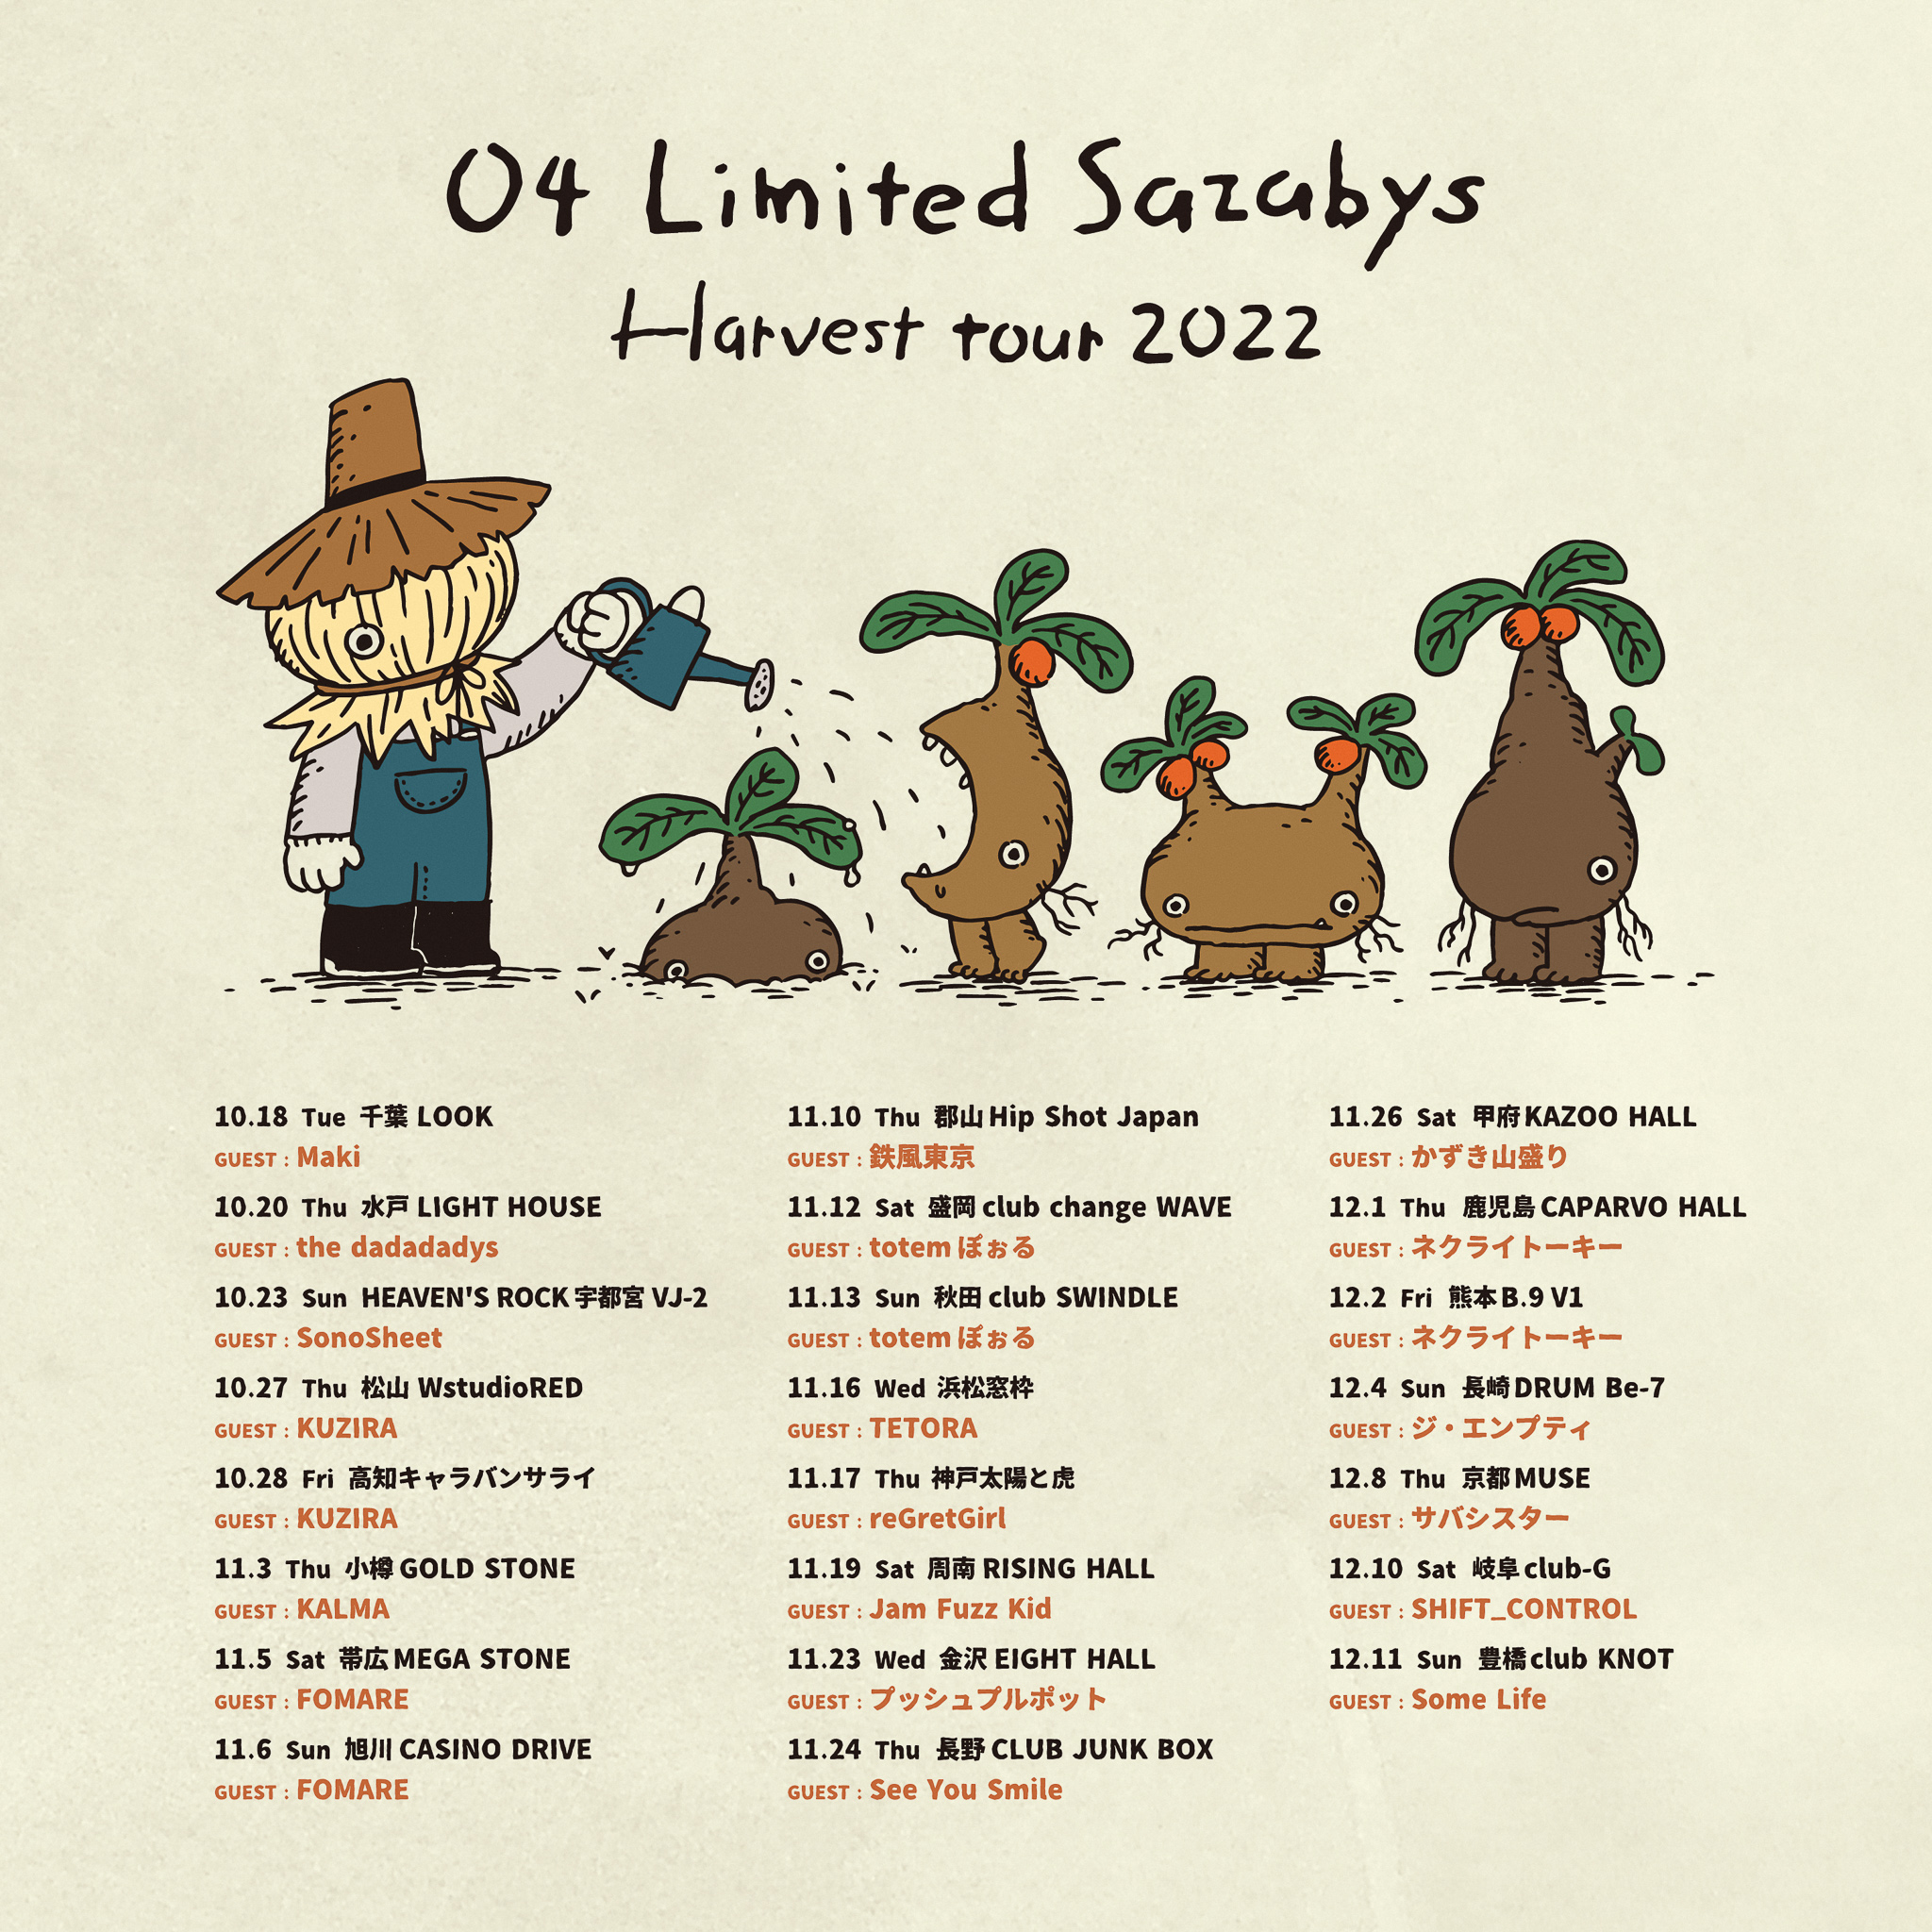 【北海道】04 Limited Sazabys "Harvest tour 2022" (帯広MEGA STONE)